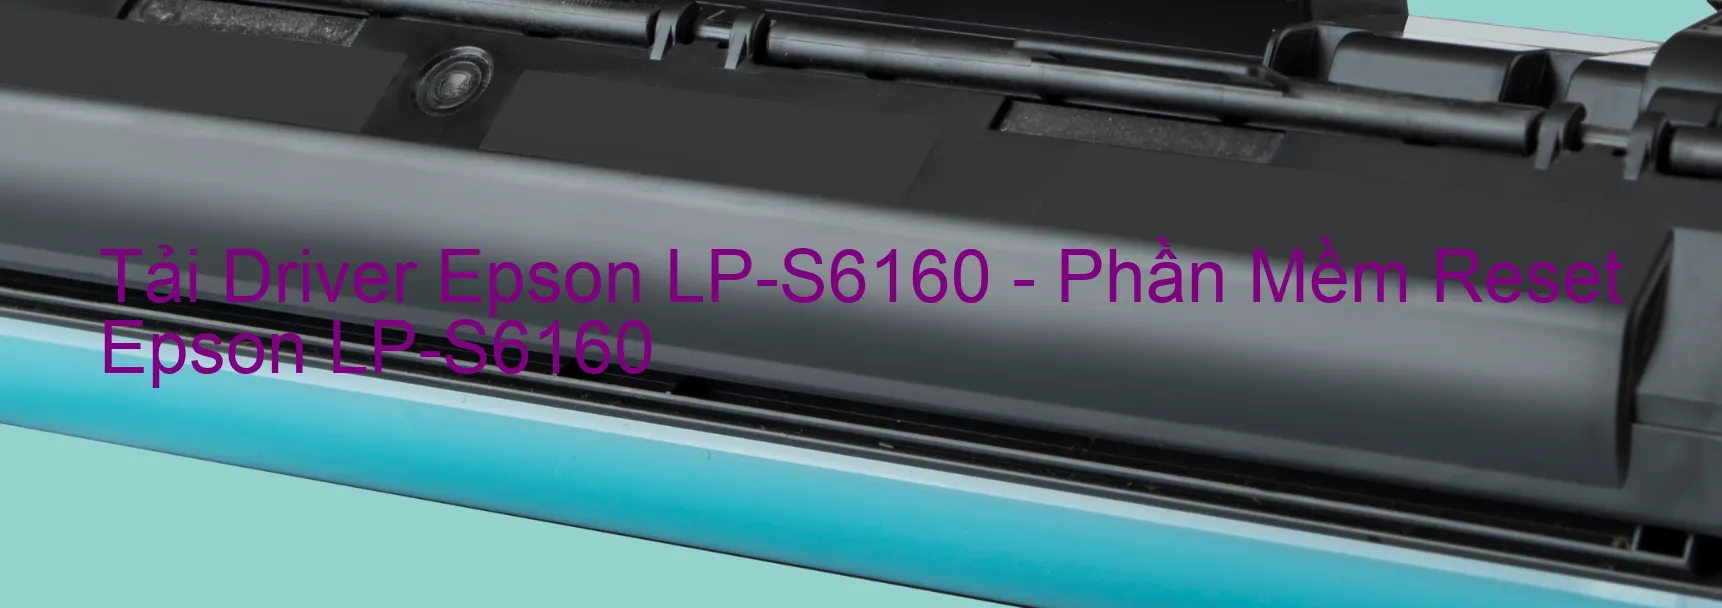 Driver Epson LP-S6160, Phần Mềm Reset Epson LP-S6160